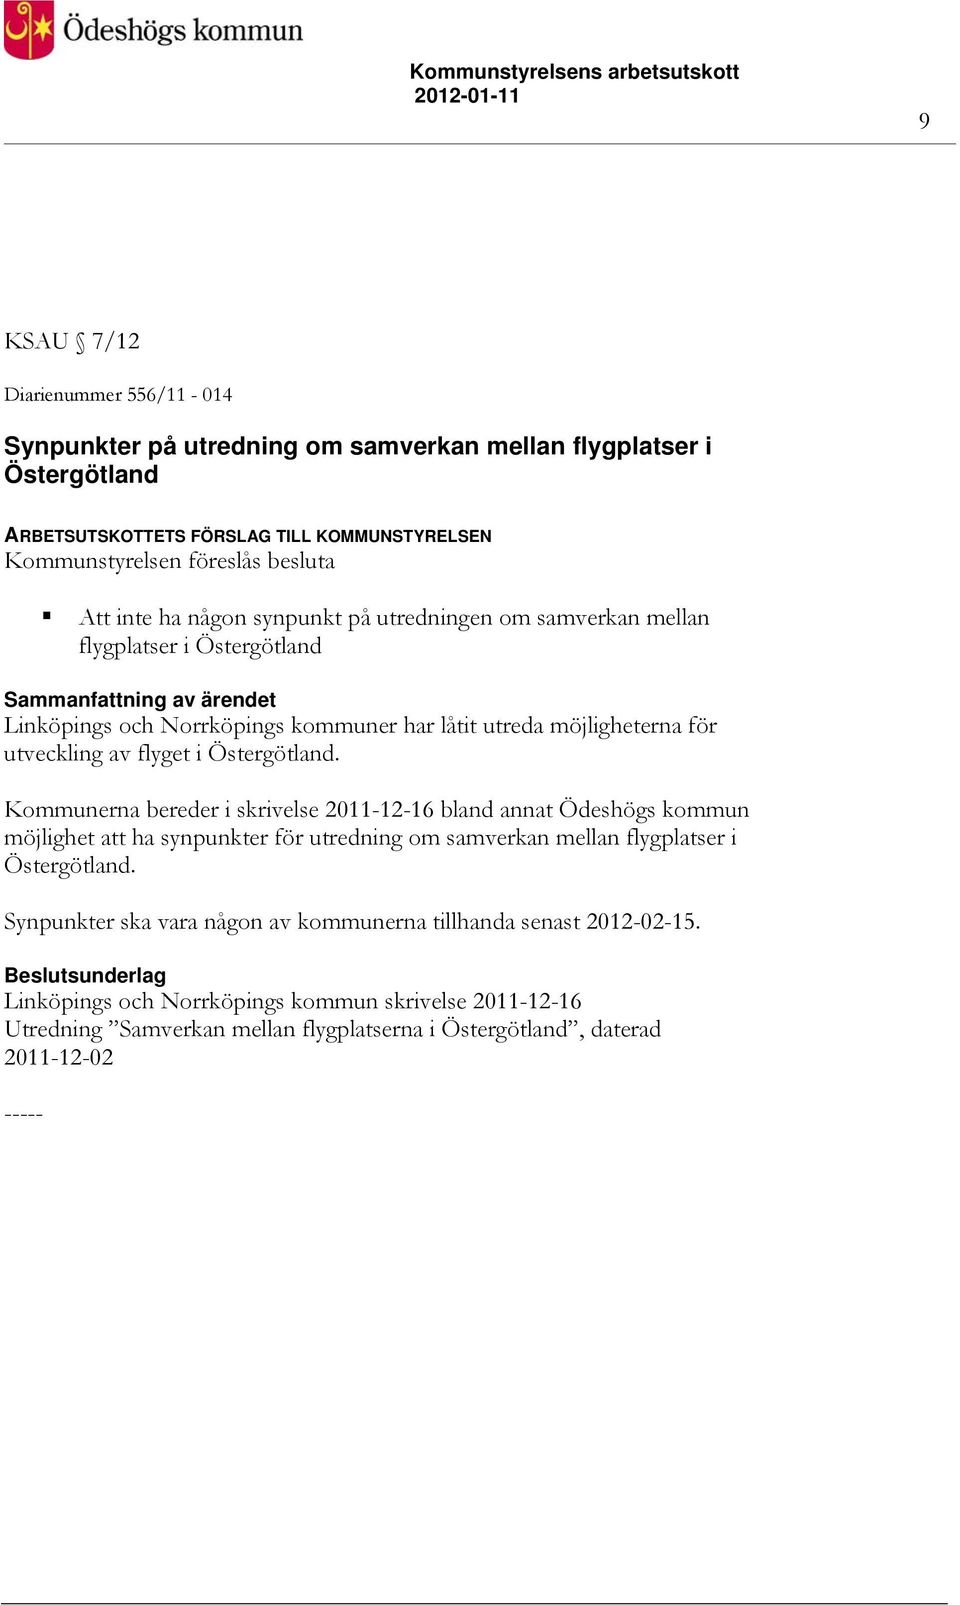 Östergötland. Kommunerna bereder i skrivelse 2011-12-16 bland annat Ödeshögs kommun möjlighet att ha synpunkter för utredning om samverkan mellan flygplatser i Östergötland.